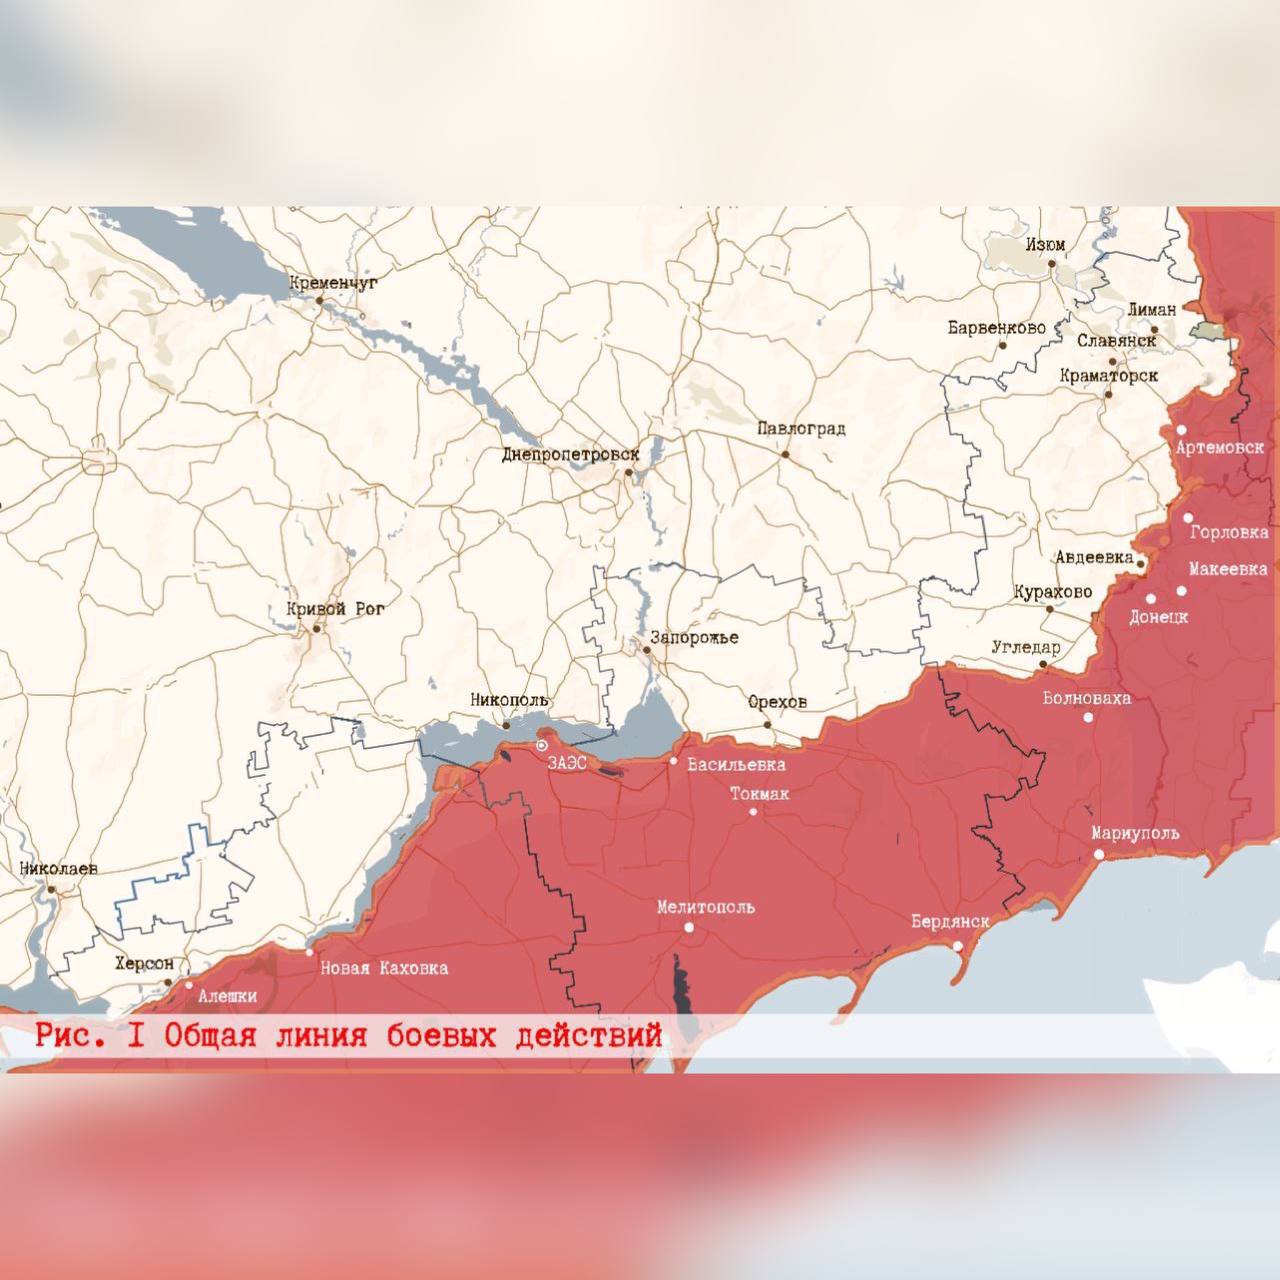 Российские войска громят ВСУ на всех направлениях - итоговая сводка года на всей линии фронта. Карта СВО на вечер 31 декабря